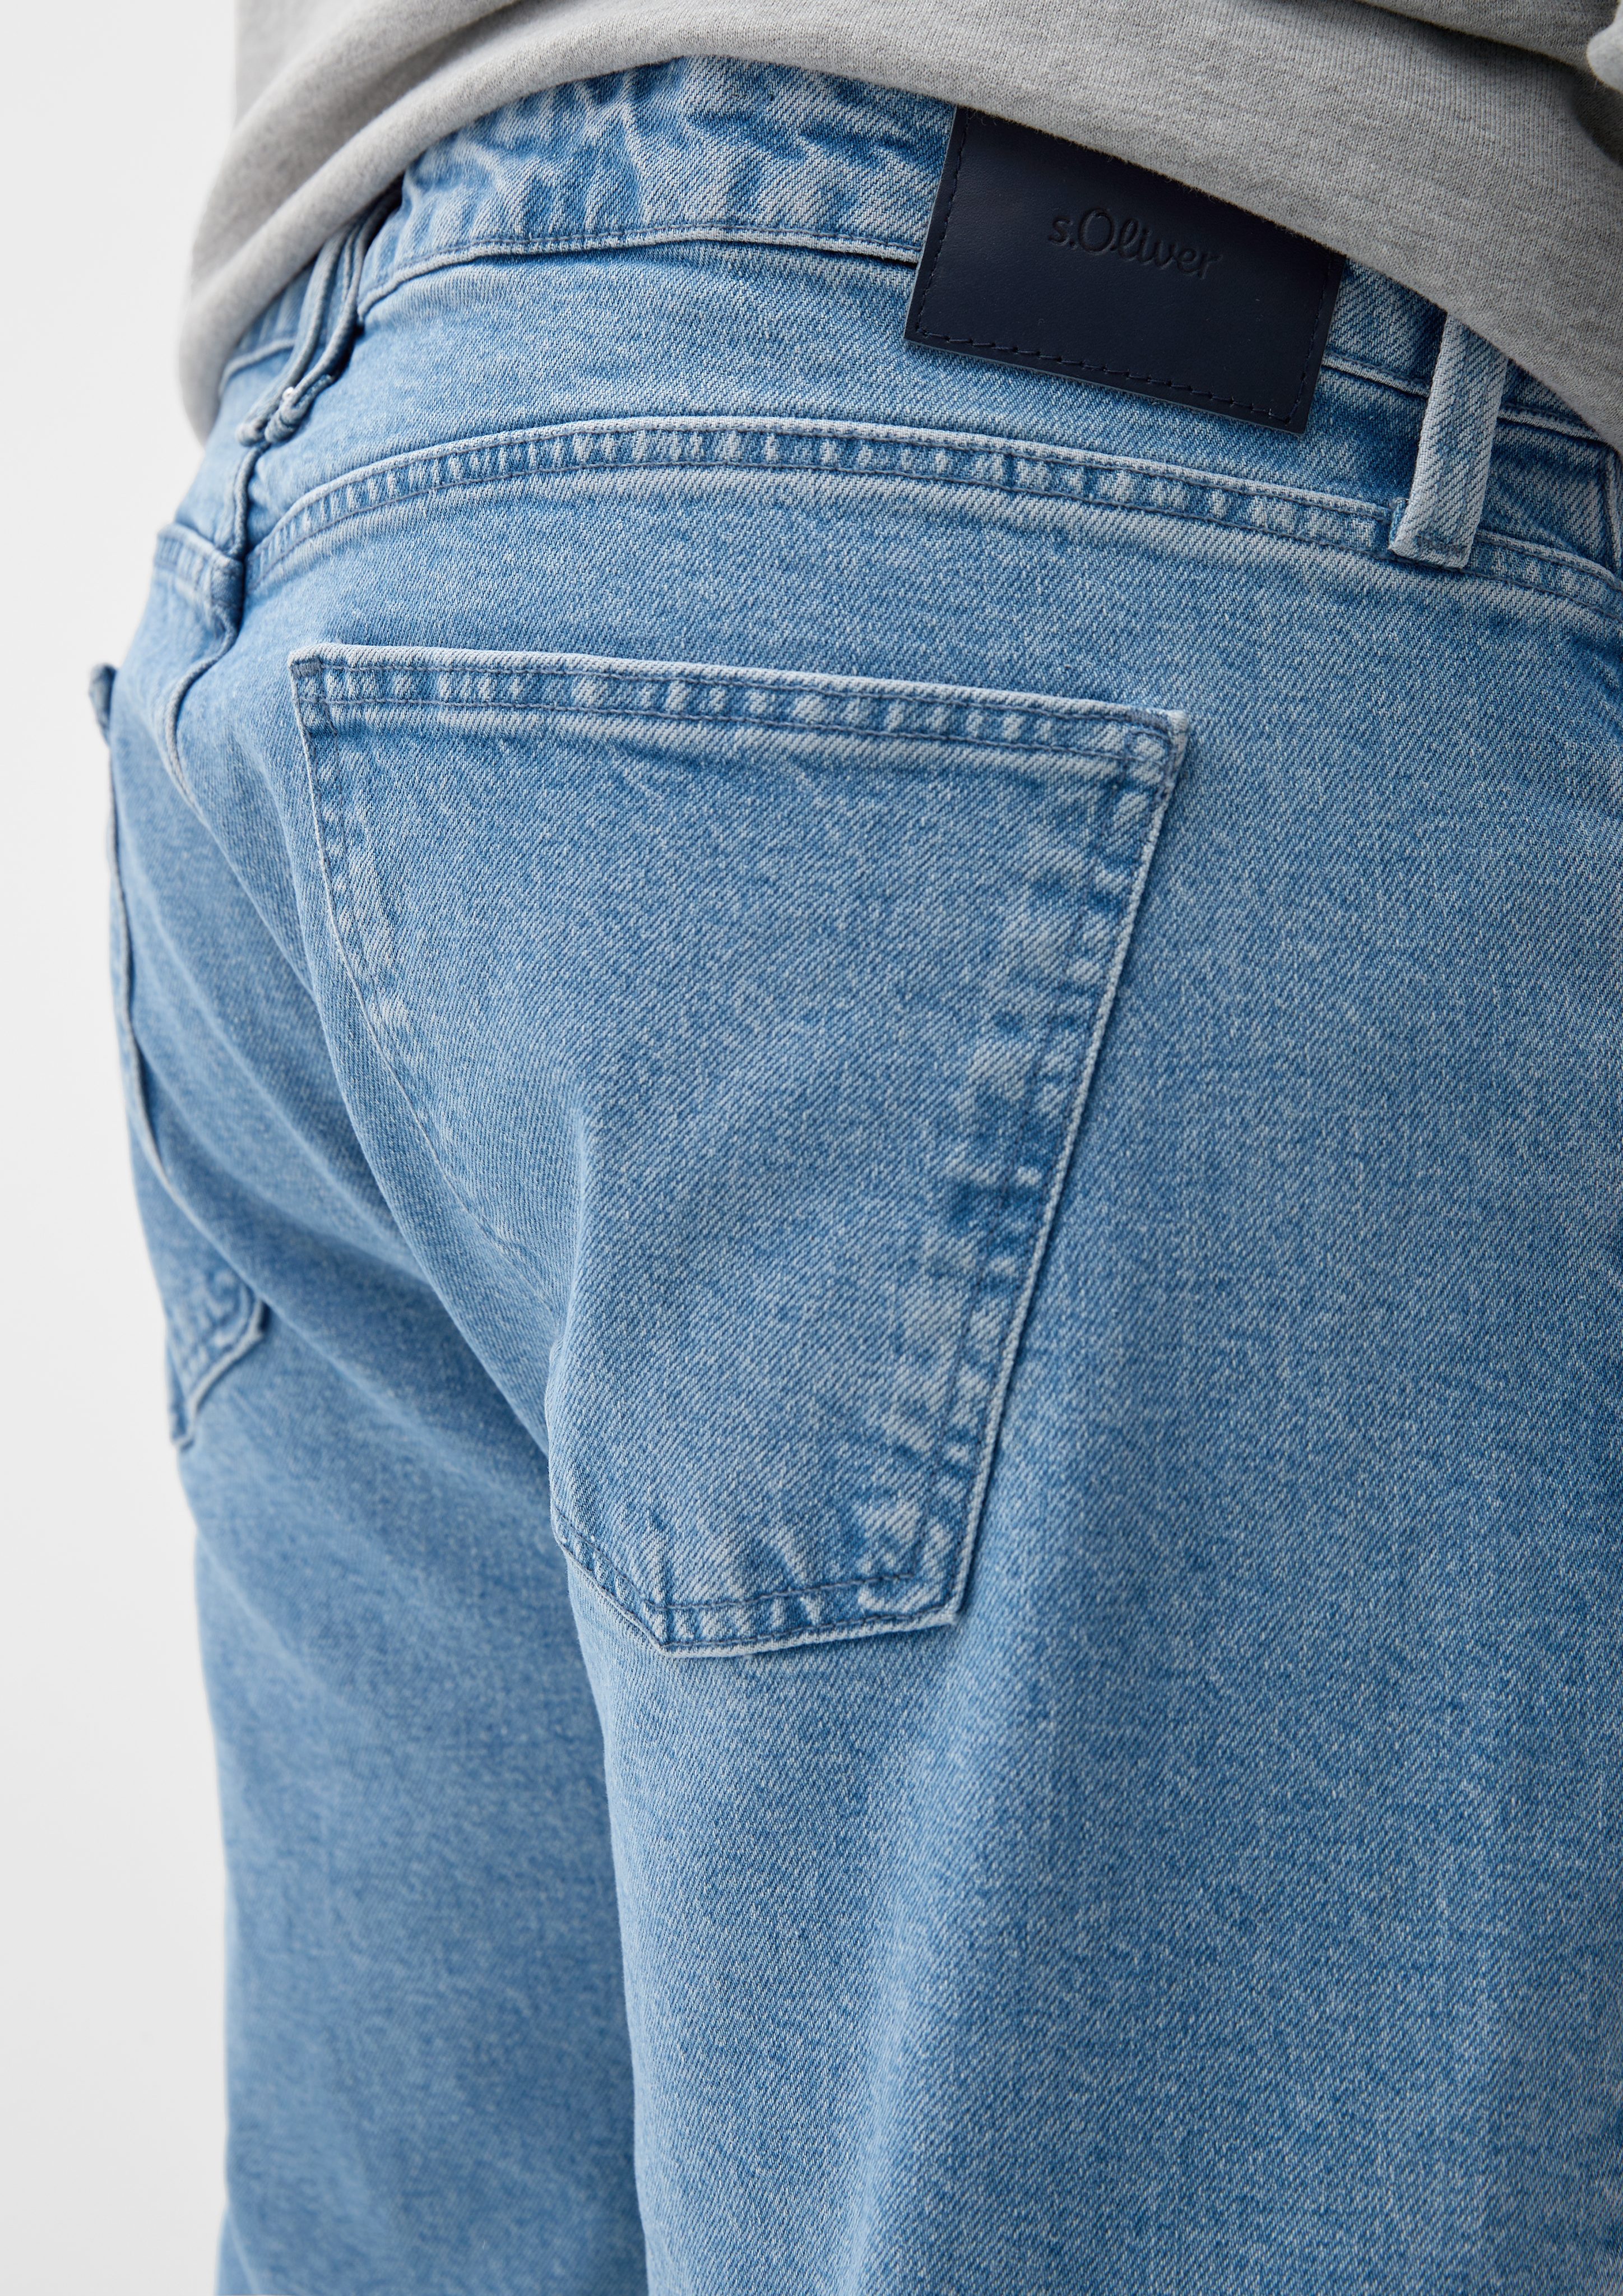 / s.Oliver hellblau / Stoffhose / Rise Leg Straight York Fit Mid Regular Jeans